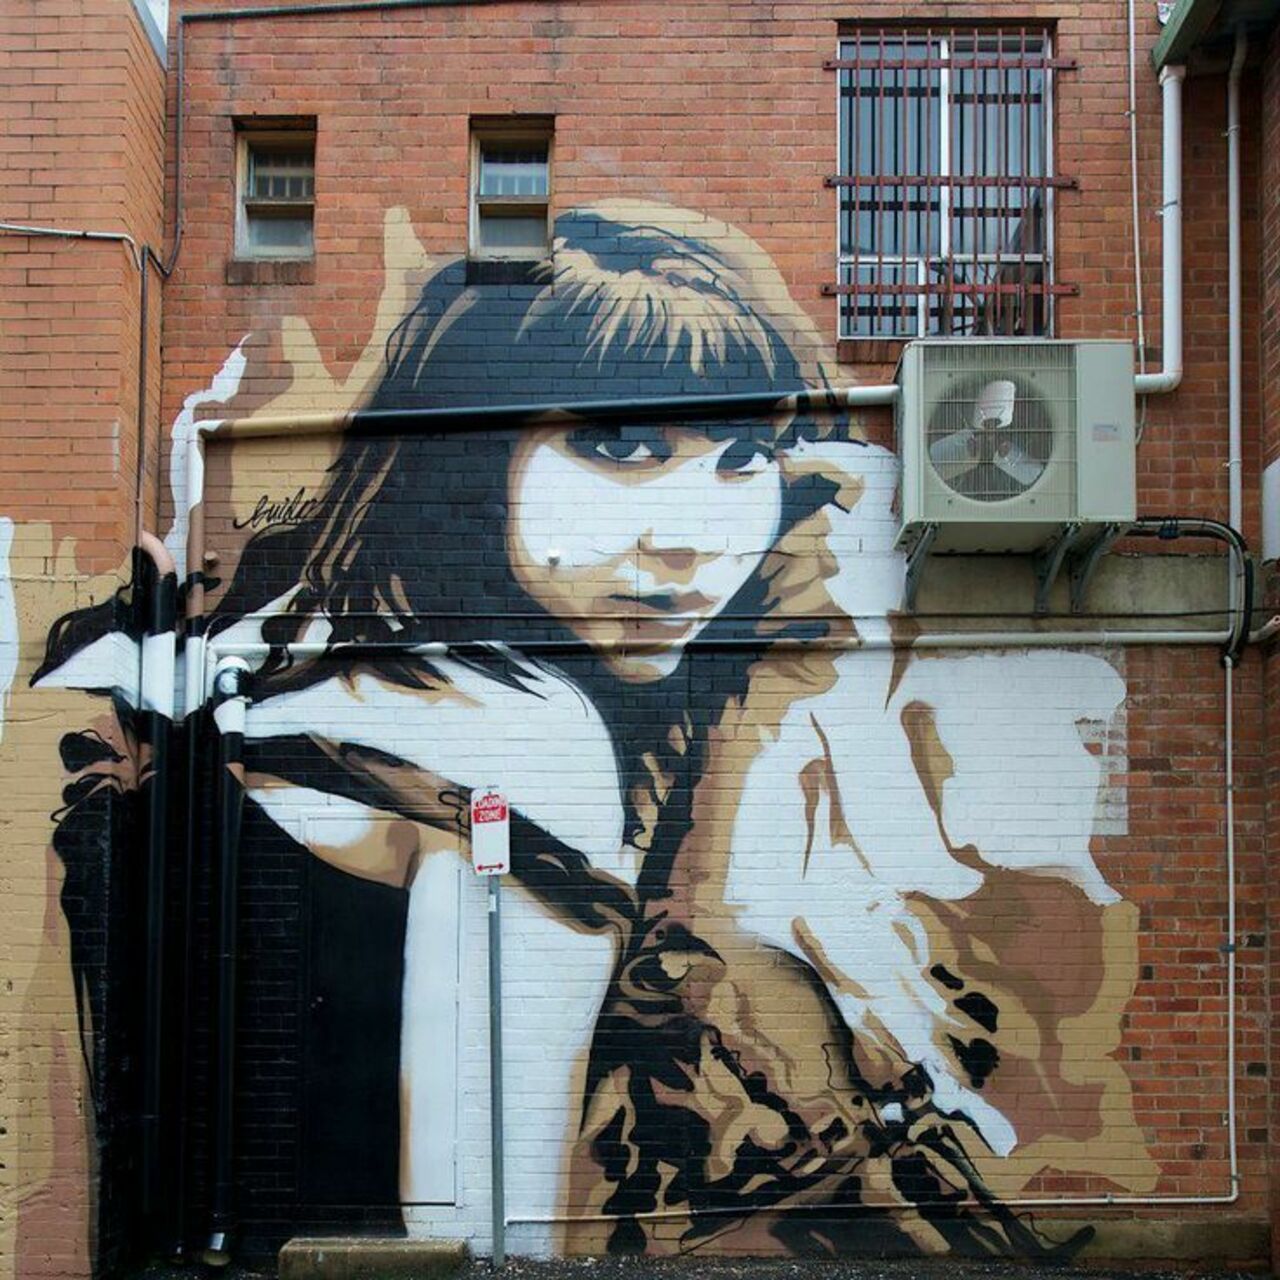 Guido Van Helten

#Graffiti #StreetArt #Mural #painting #Urban #Art #stencilart http://t.co/XeAtck9s5j